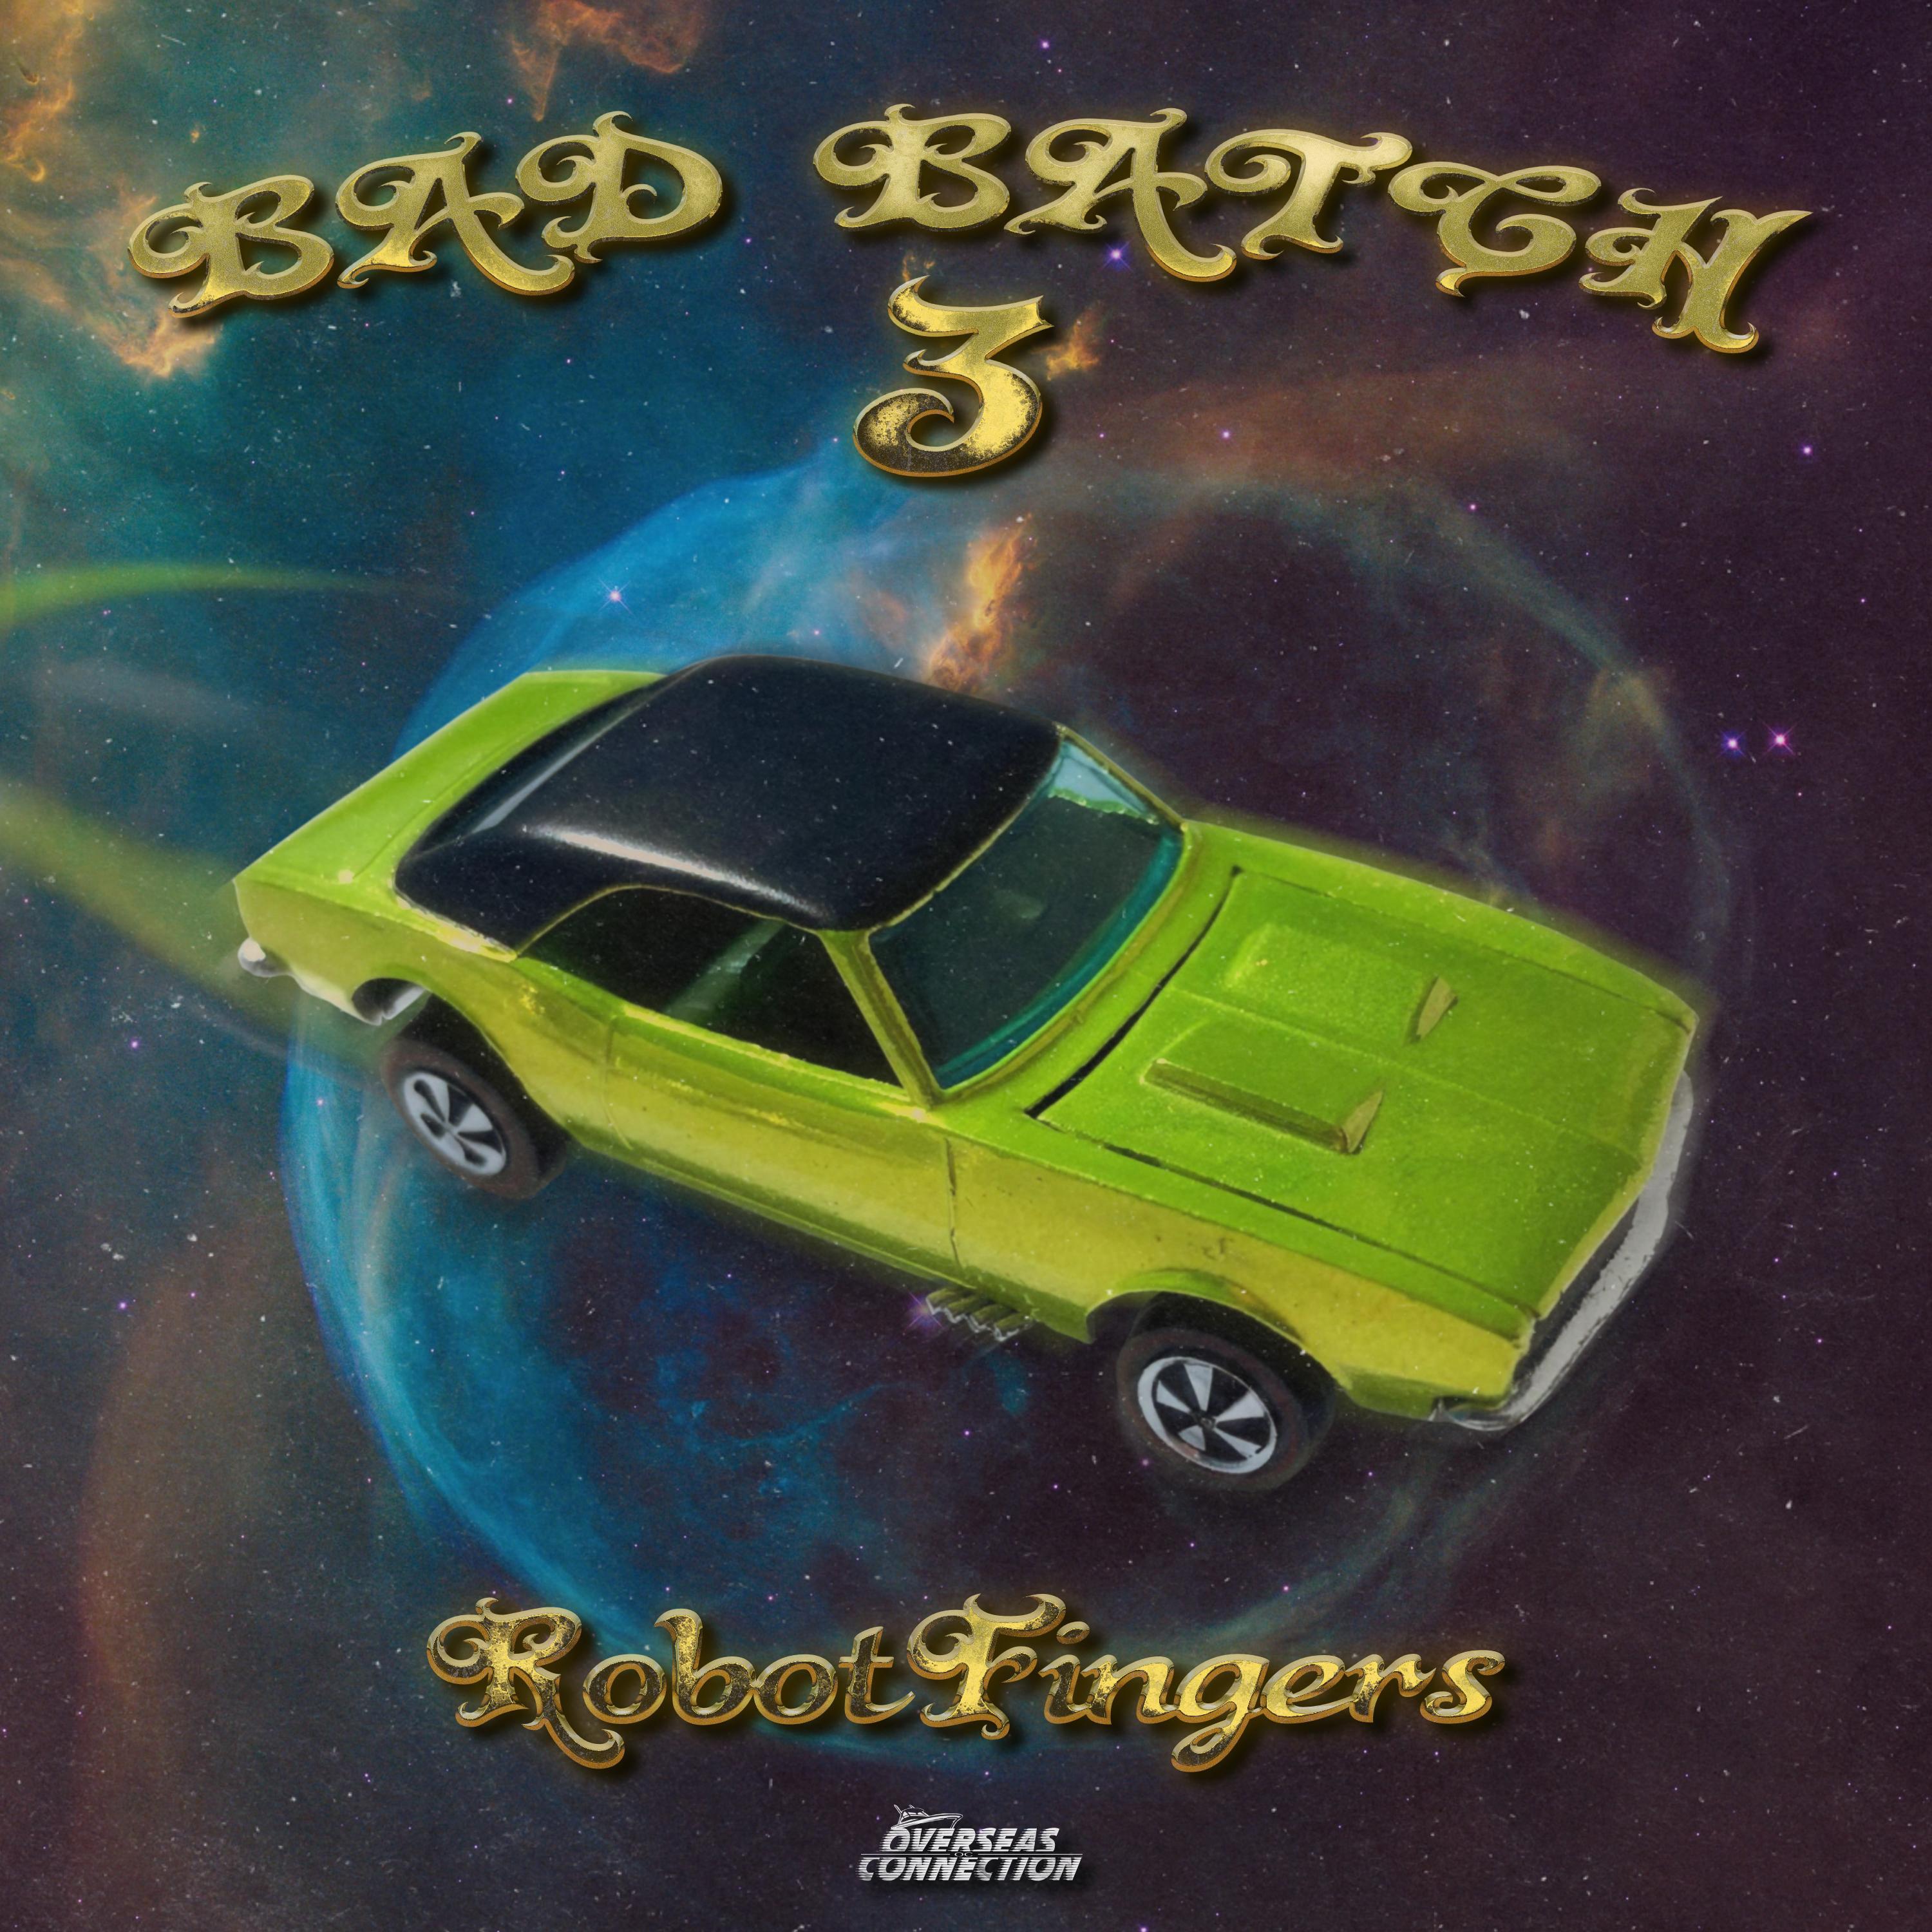 robotfingers - Bring it Home (feat. Freddy Konfeddy)